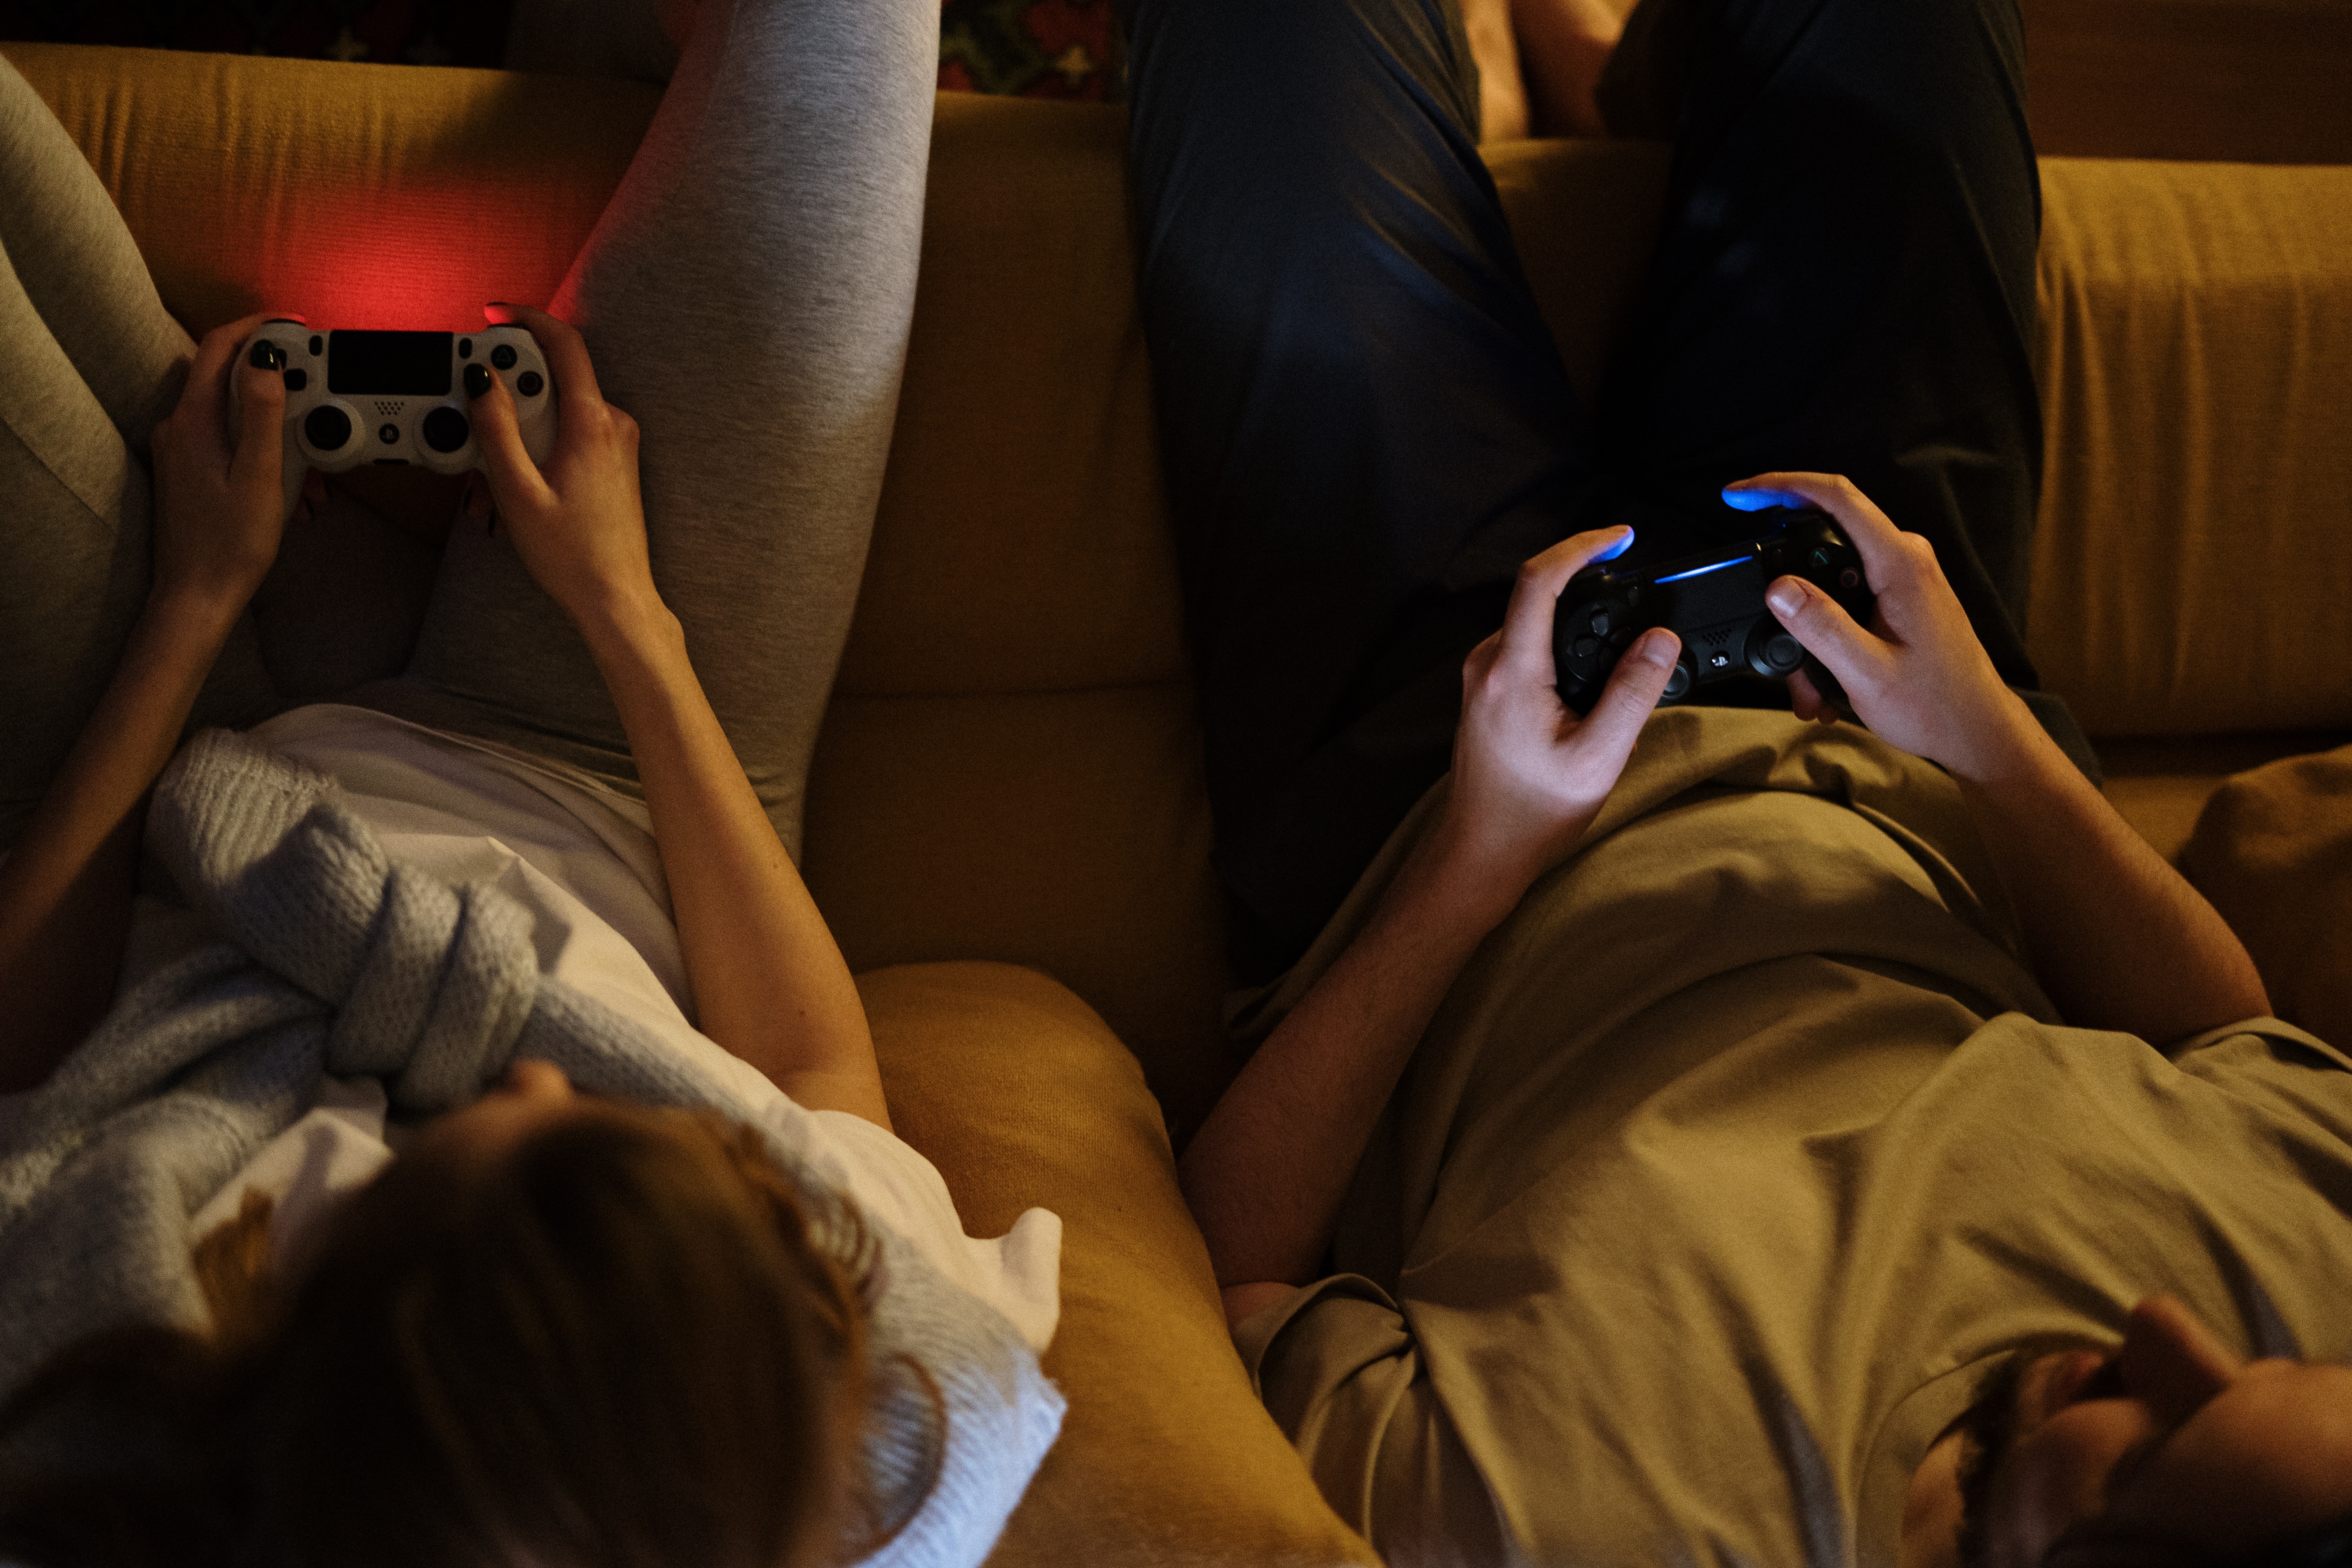 Los expertos también resaltaron sobre el consumo problemático de videojuegos, redes sociales y pantallas en general